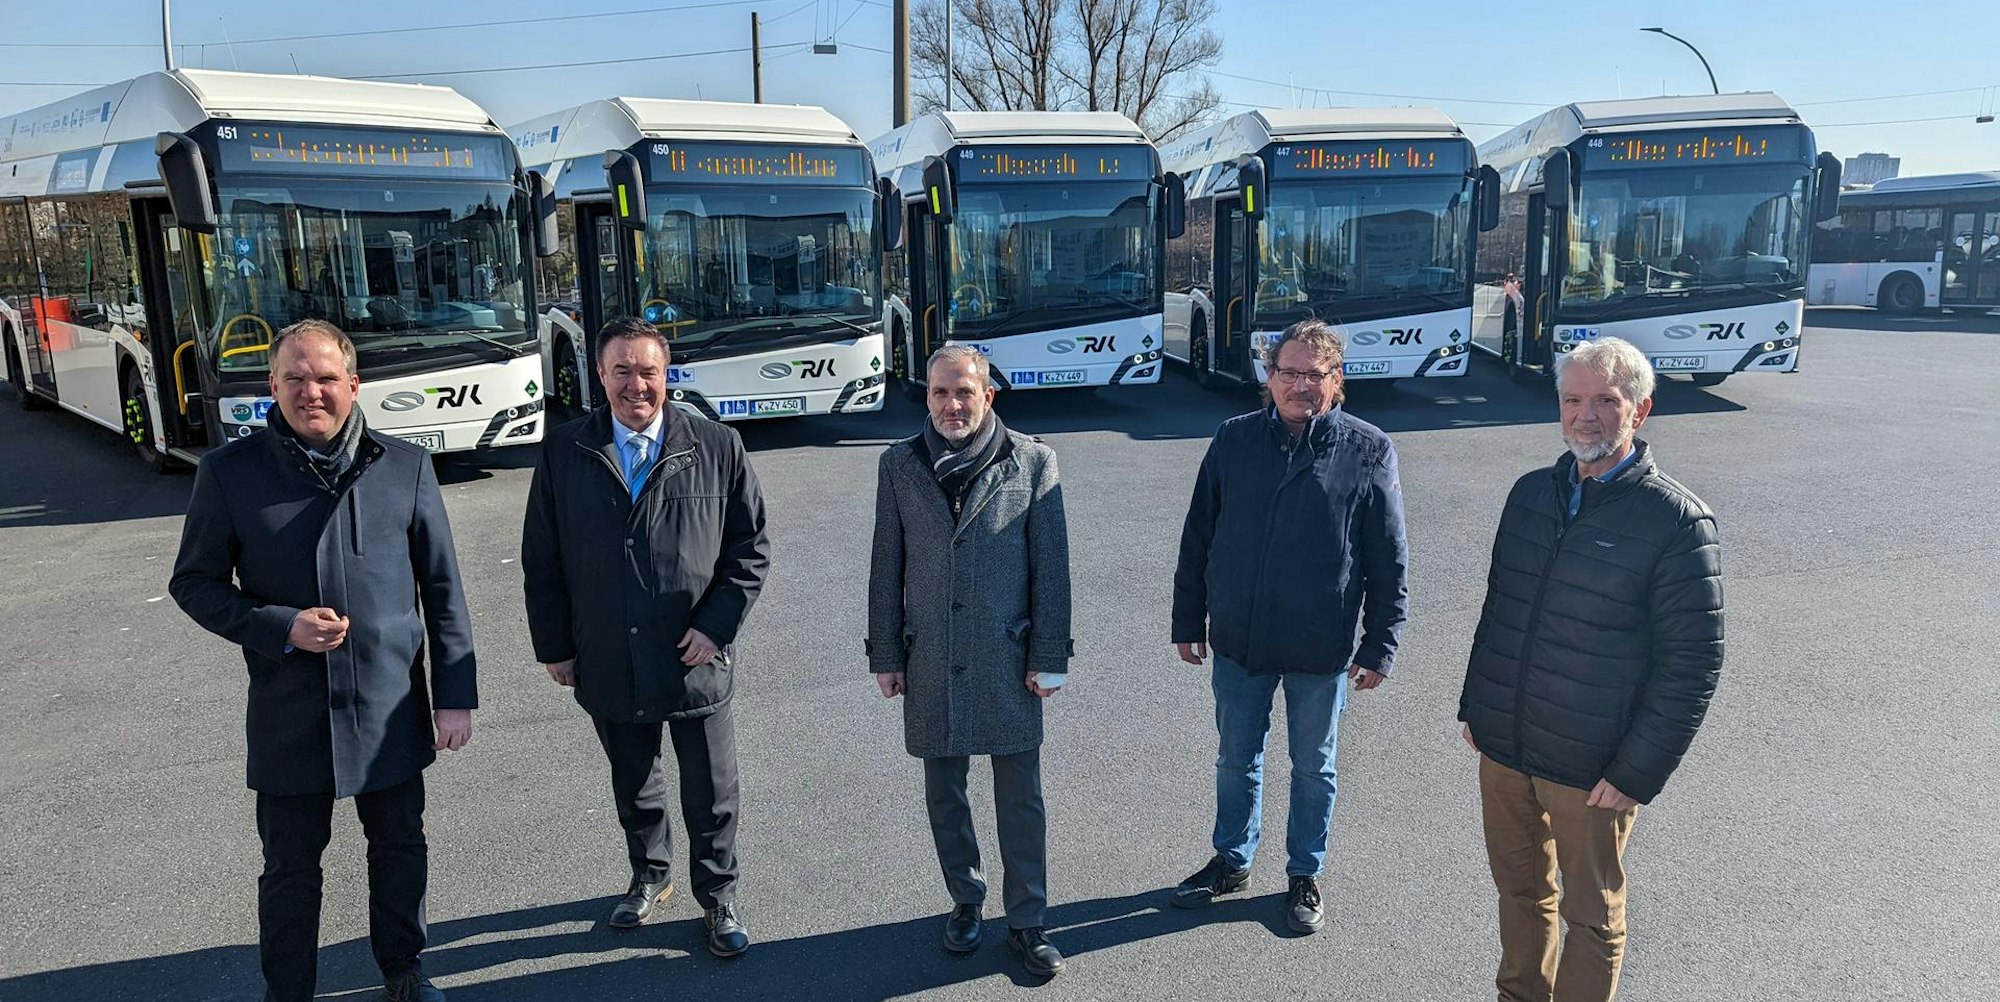 Stolz auf die neuen Busse sind Bürgermeister Dirk Breuer, Stadtwerkechef Stefan Welsch, RVK-Verkehrsleiter Carsten Bußjaeger, Standortleiter Dirk Müller und Mobilitätsleiter Jürgen Wiethüchter.